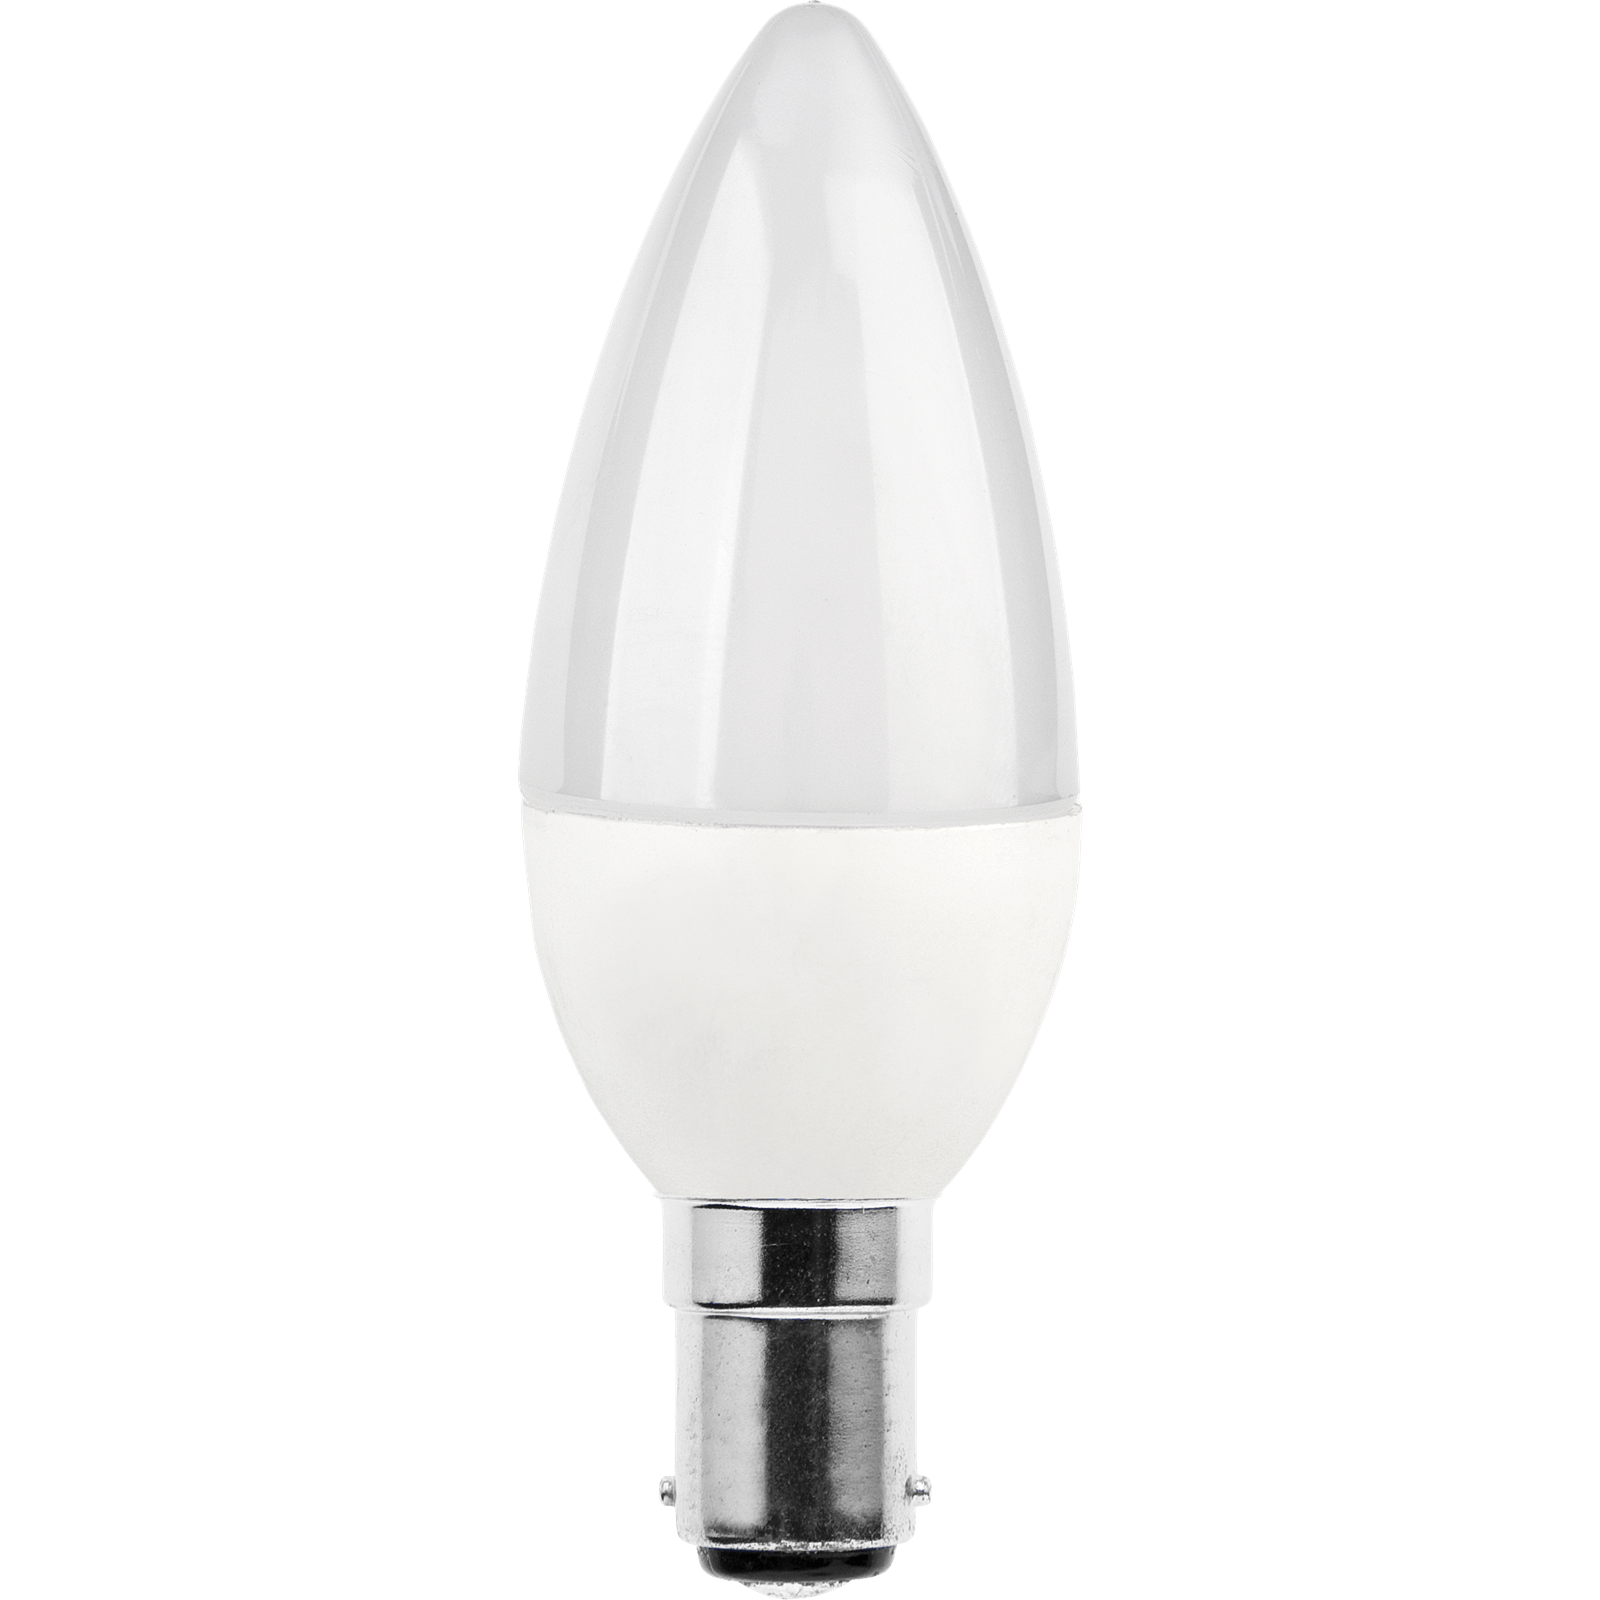 TCP LED Candle 40W SBC Warm Light Bulb - 2 pack